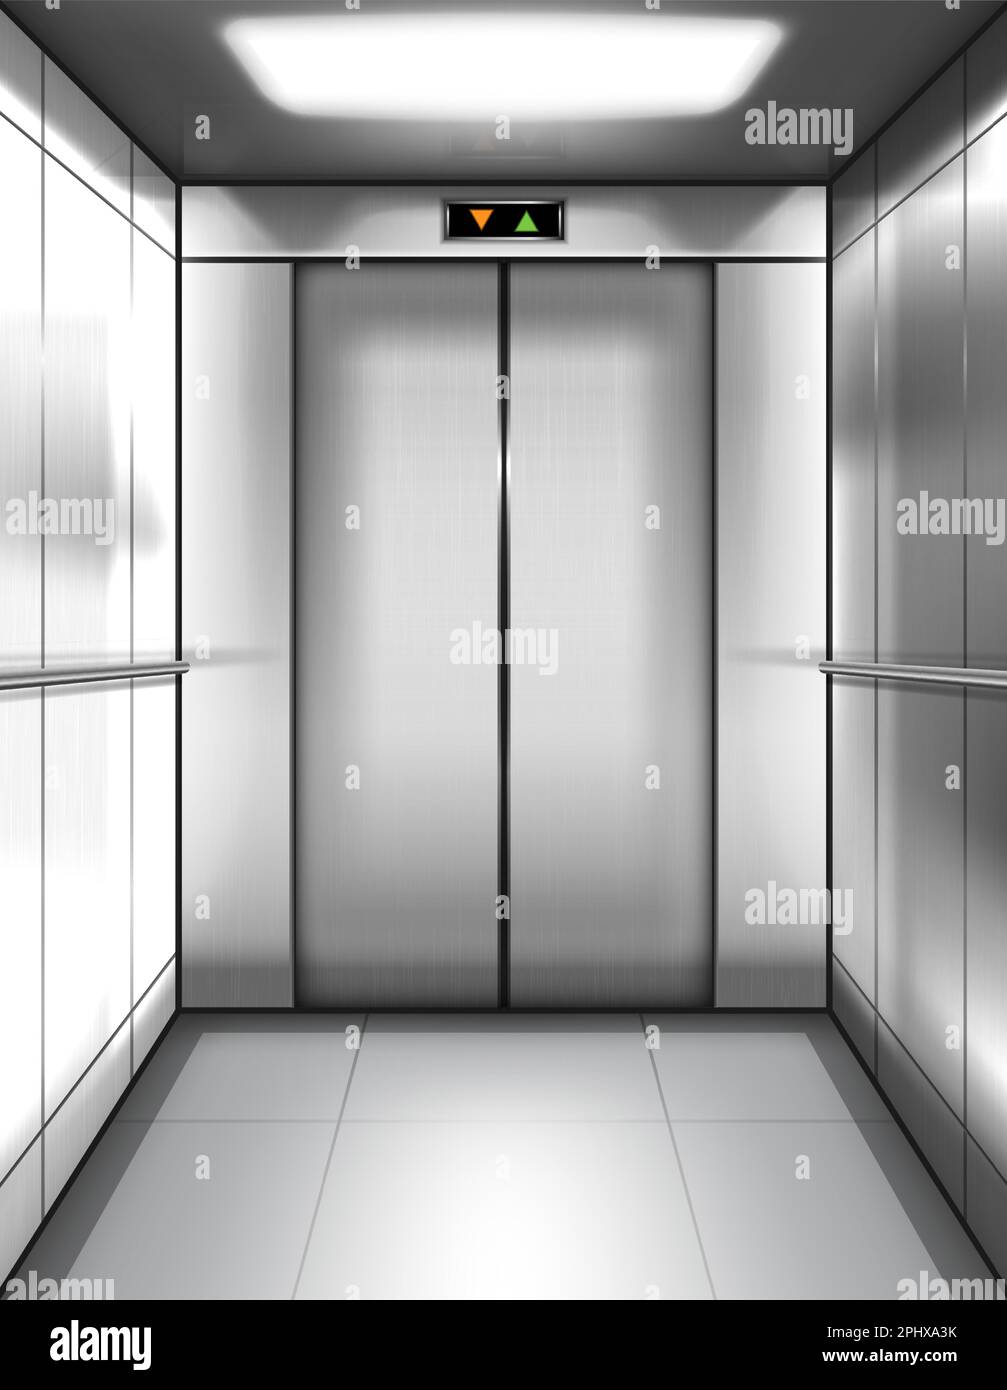 Cabine d'ascenseur vide avec portes fermées et affichage numérique avec flèches vers le haut et vers le bas. Vector intérieur réaliste des monte-charge ou des passagers avec murs et mains courantes métalliques dans un immeuble de bureaux ou une maison Illustration de Vecteur